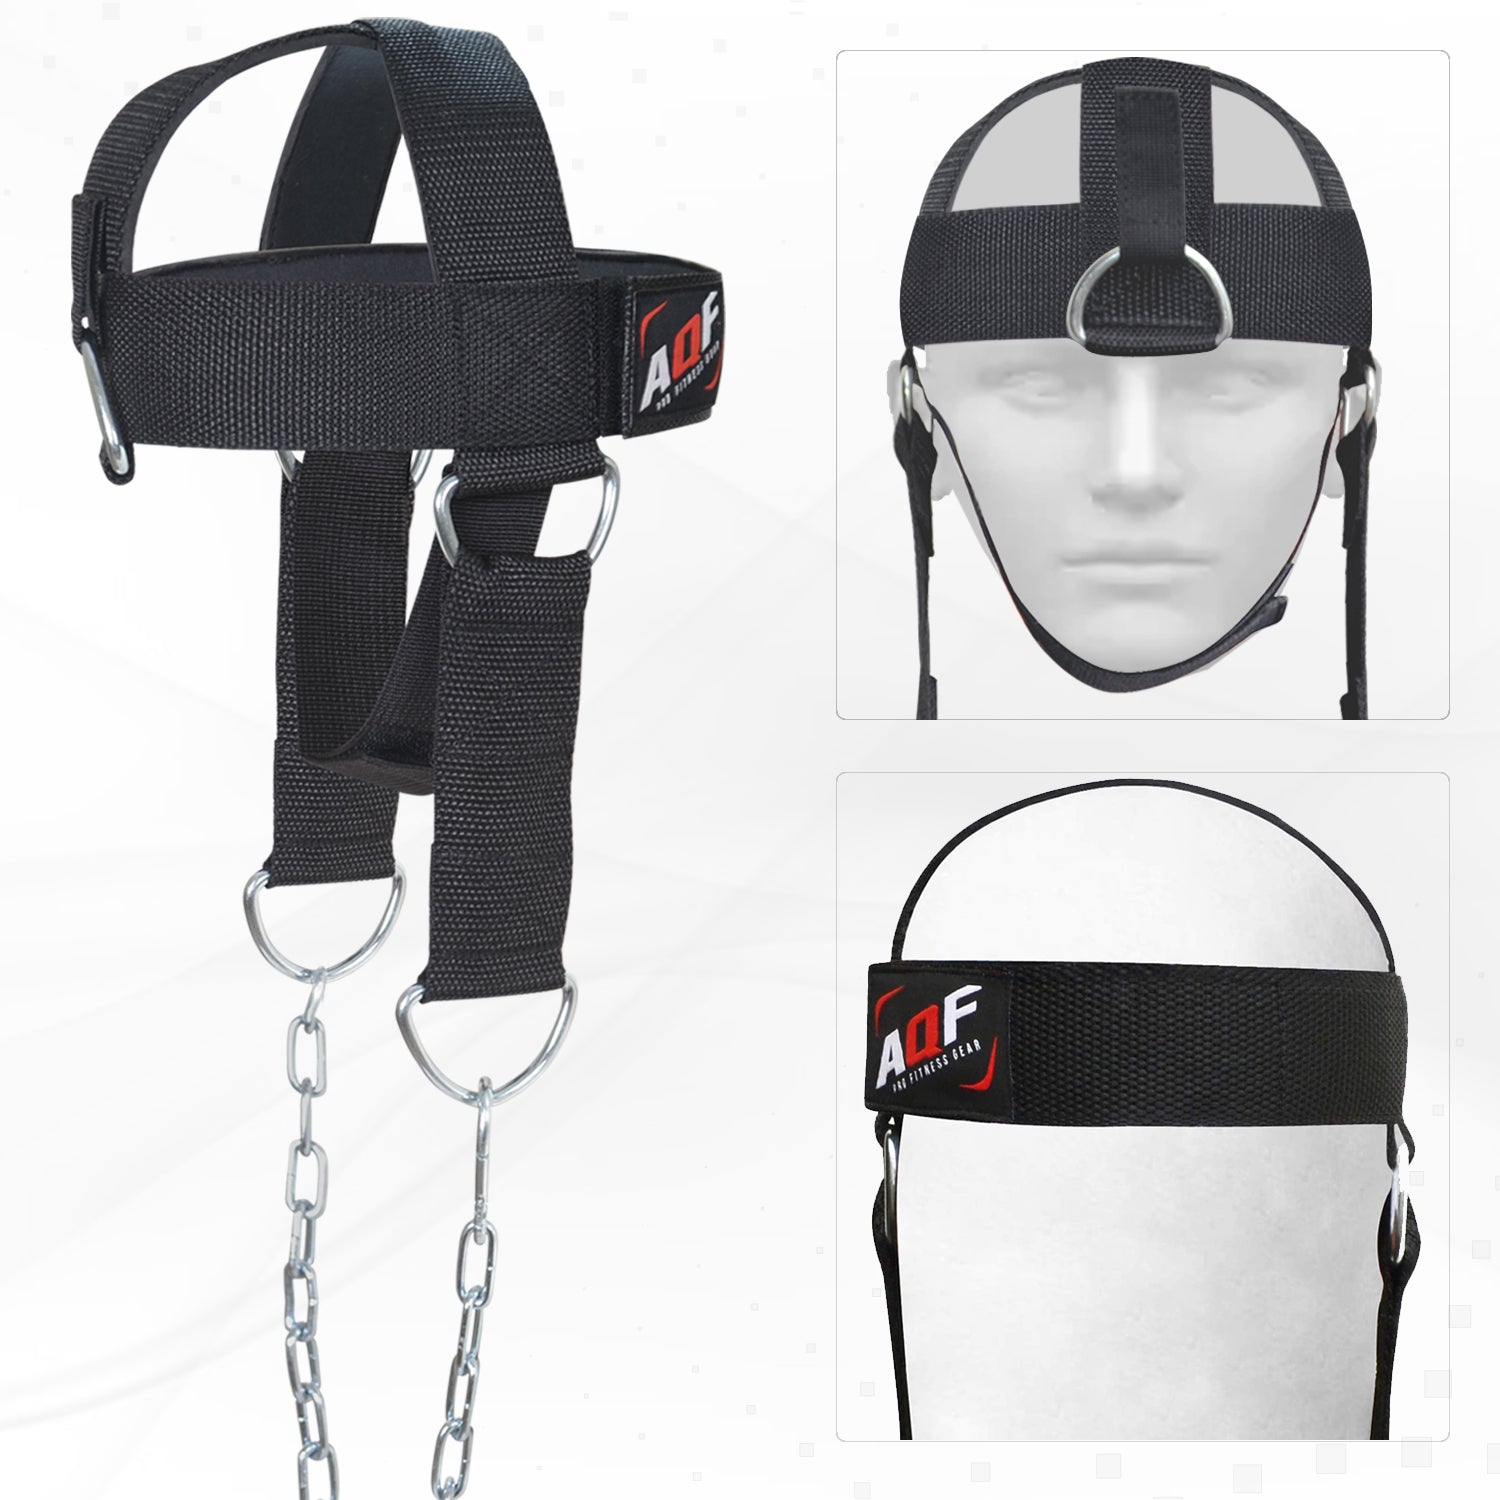 AQF Head Harness with Chin Strap - AQF Sports